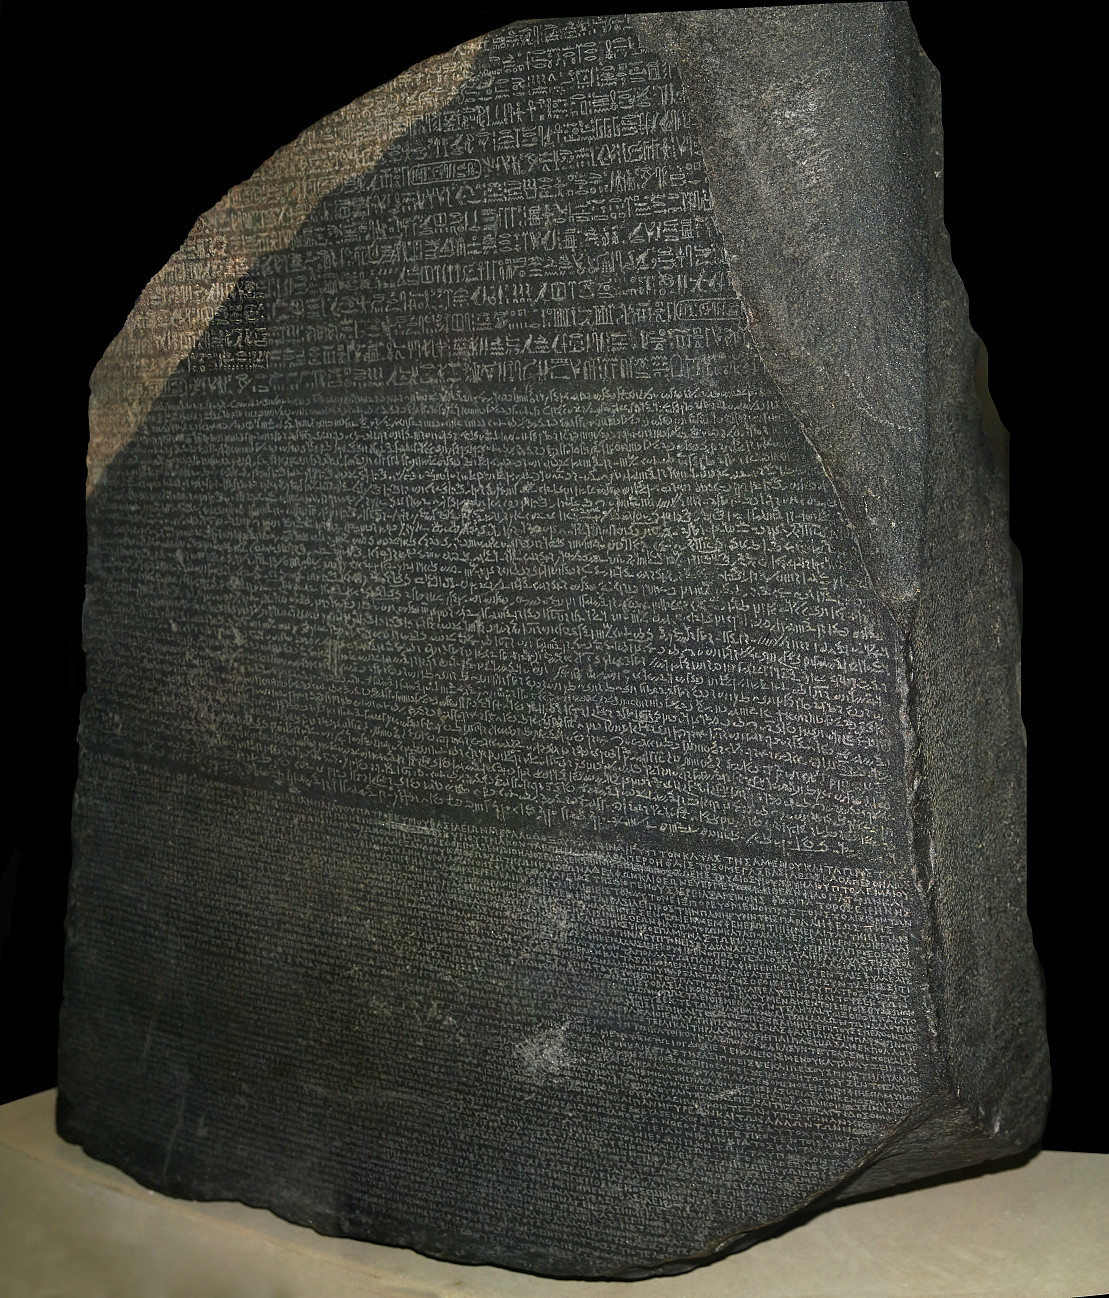 Rosetta Stone rkj9m-s1109x1298